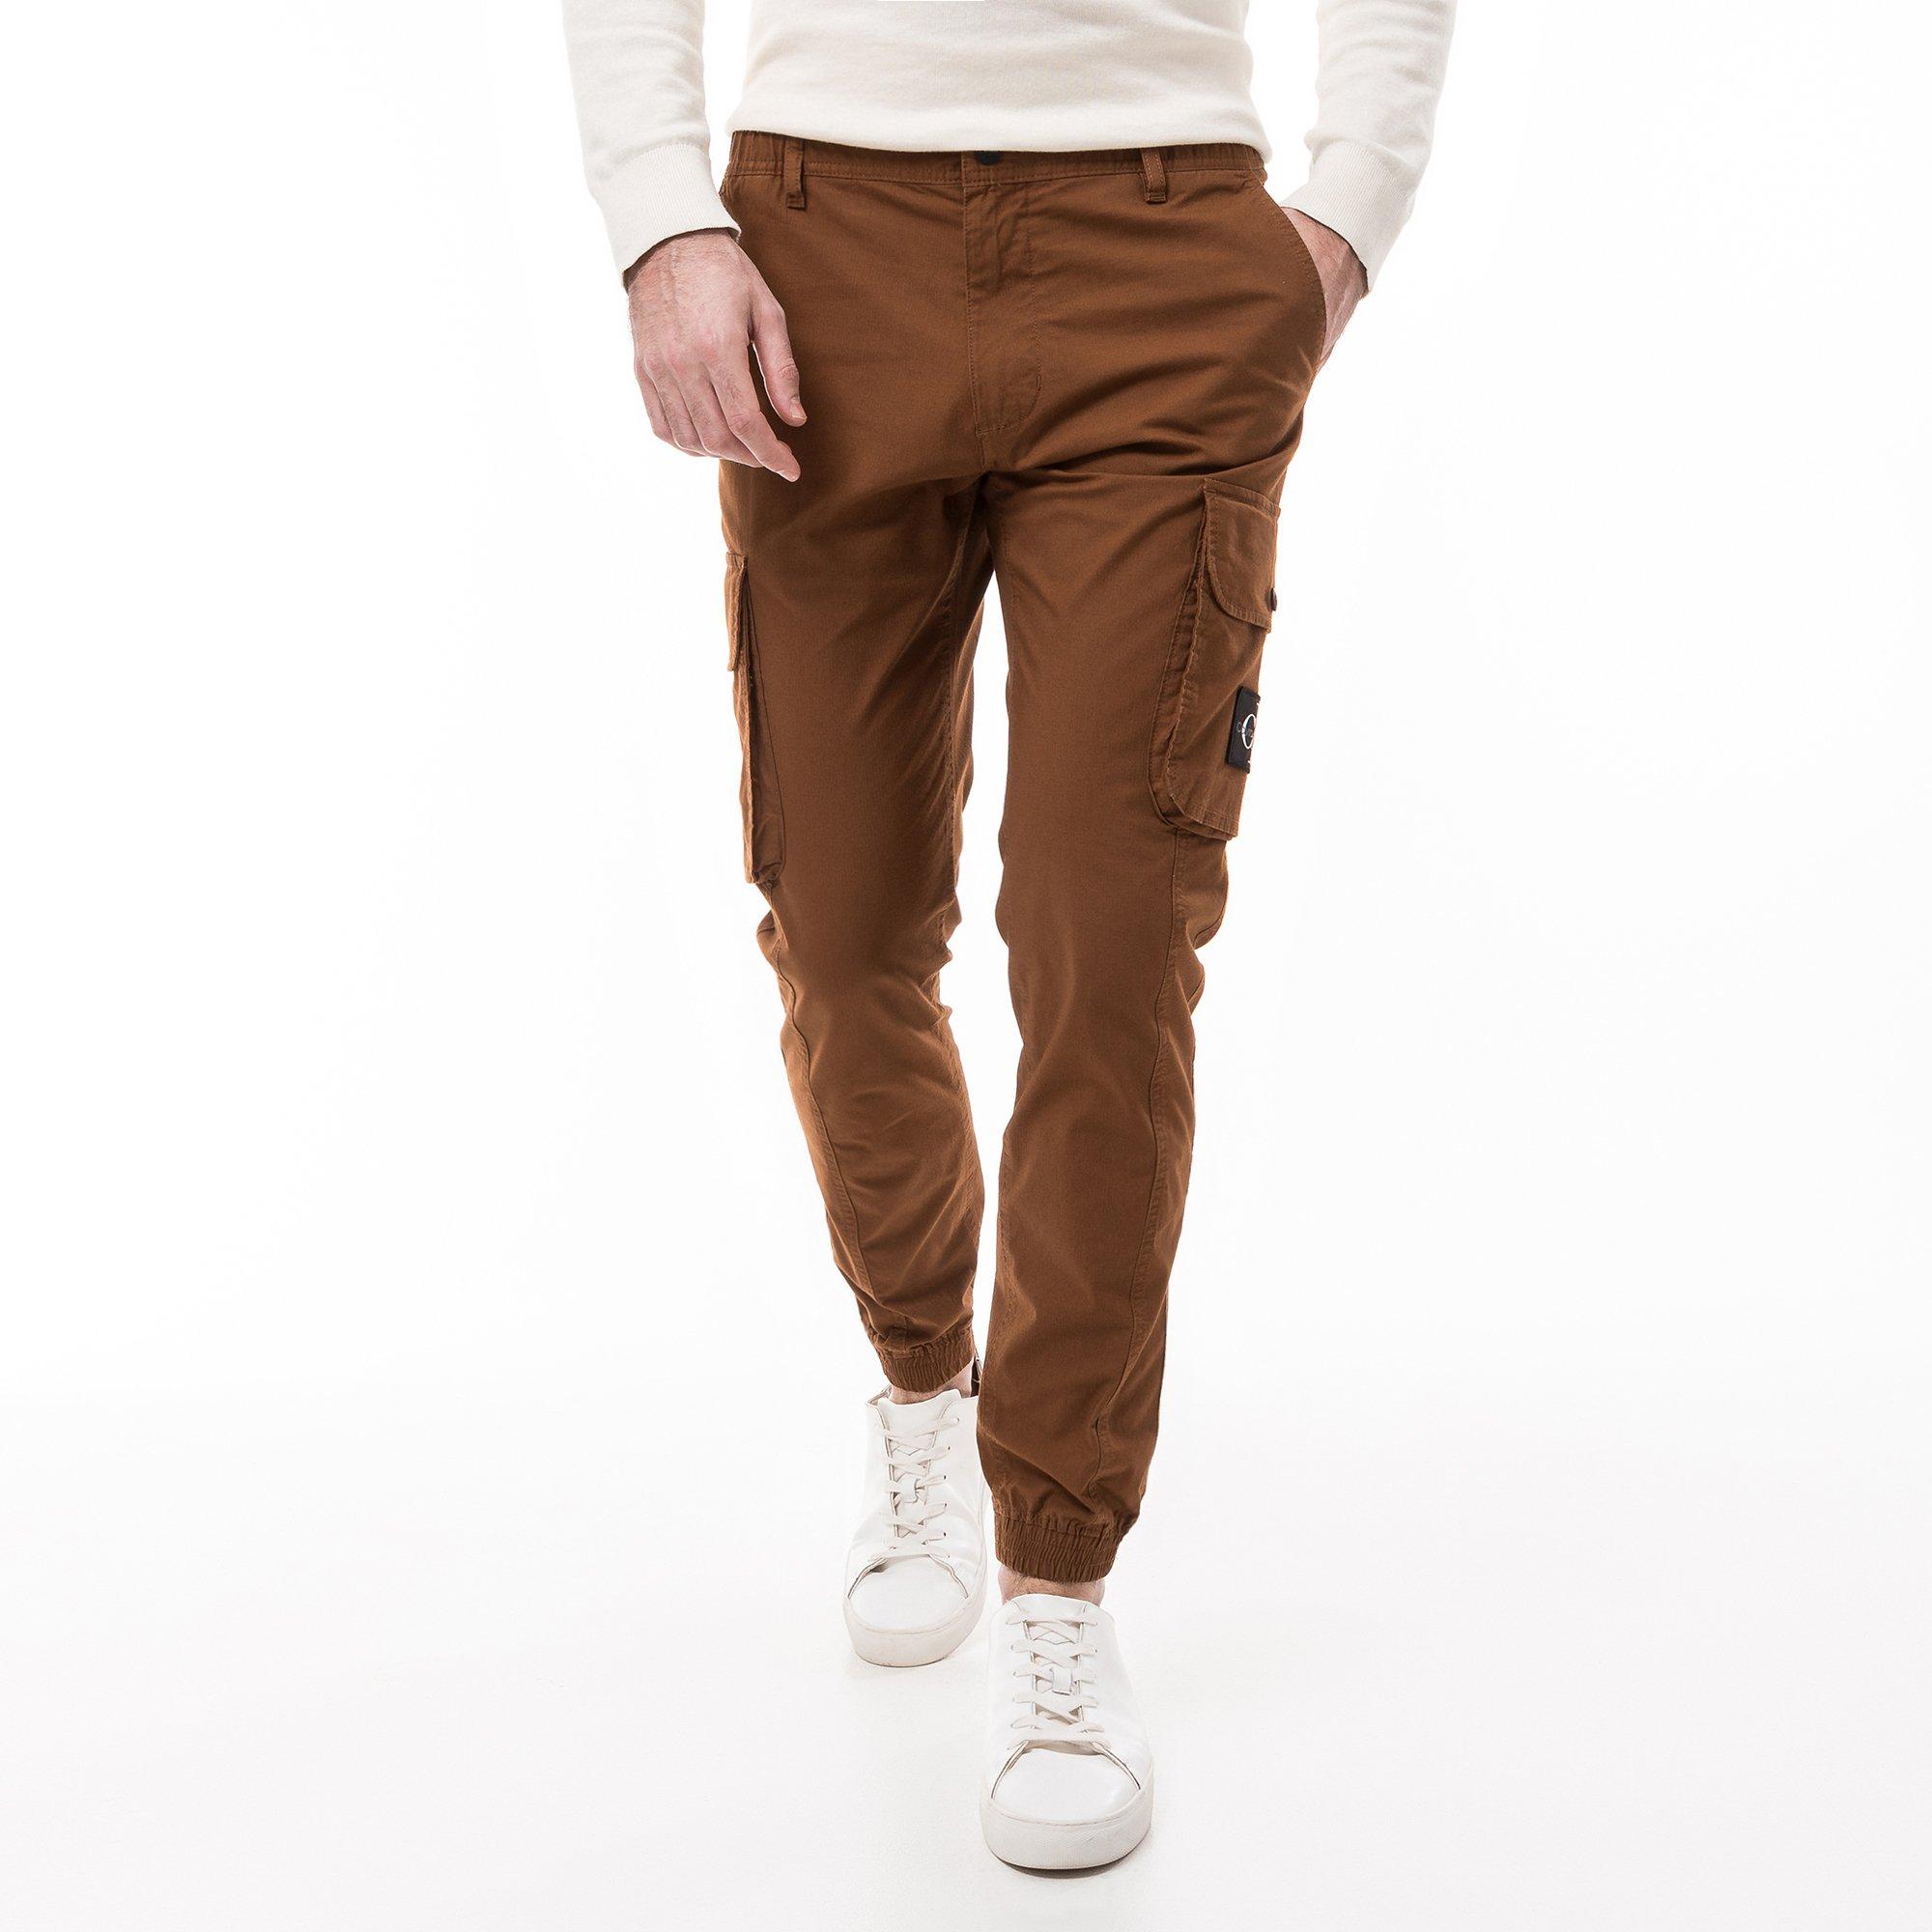 Calvin Klein Jeans SKINNY CARGO Cargohose, Slim Fit | online kaufen - MANOR